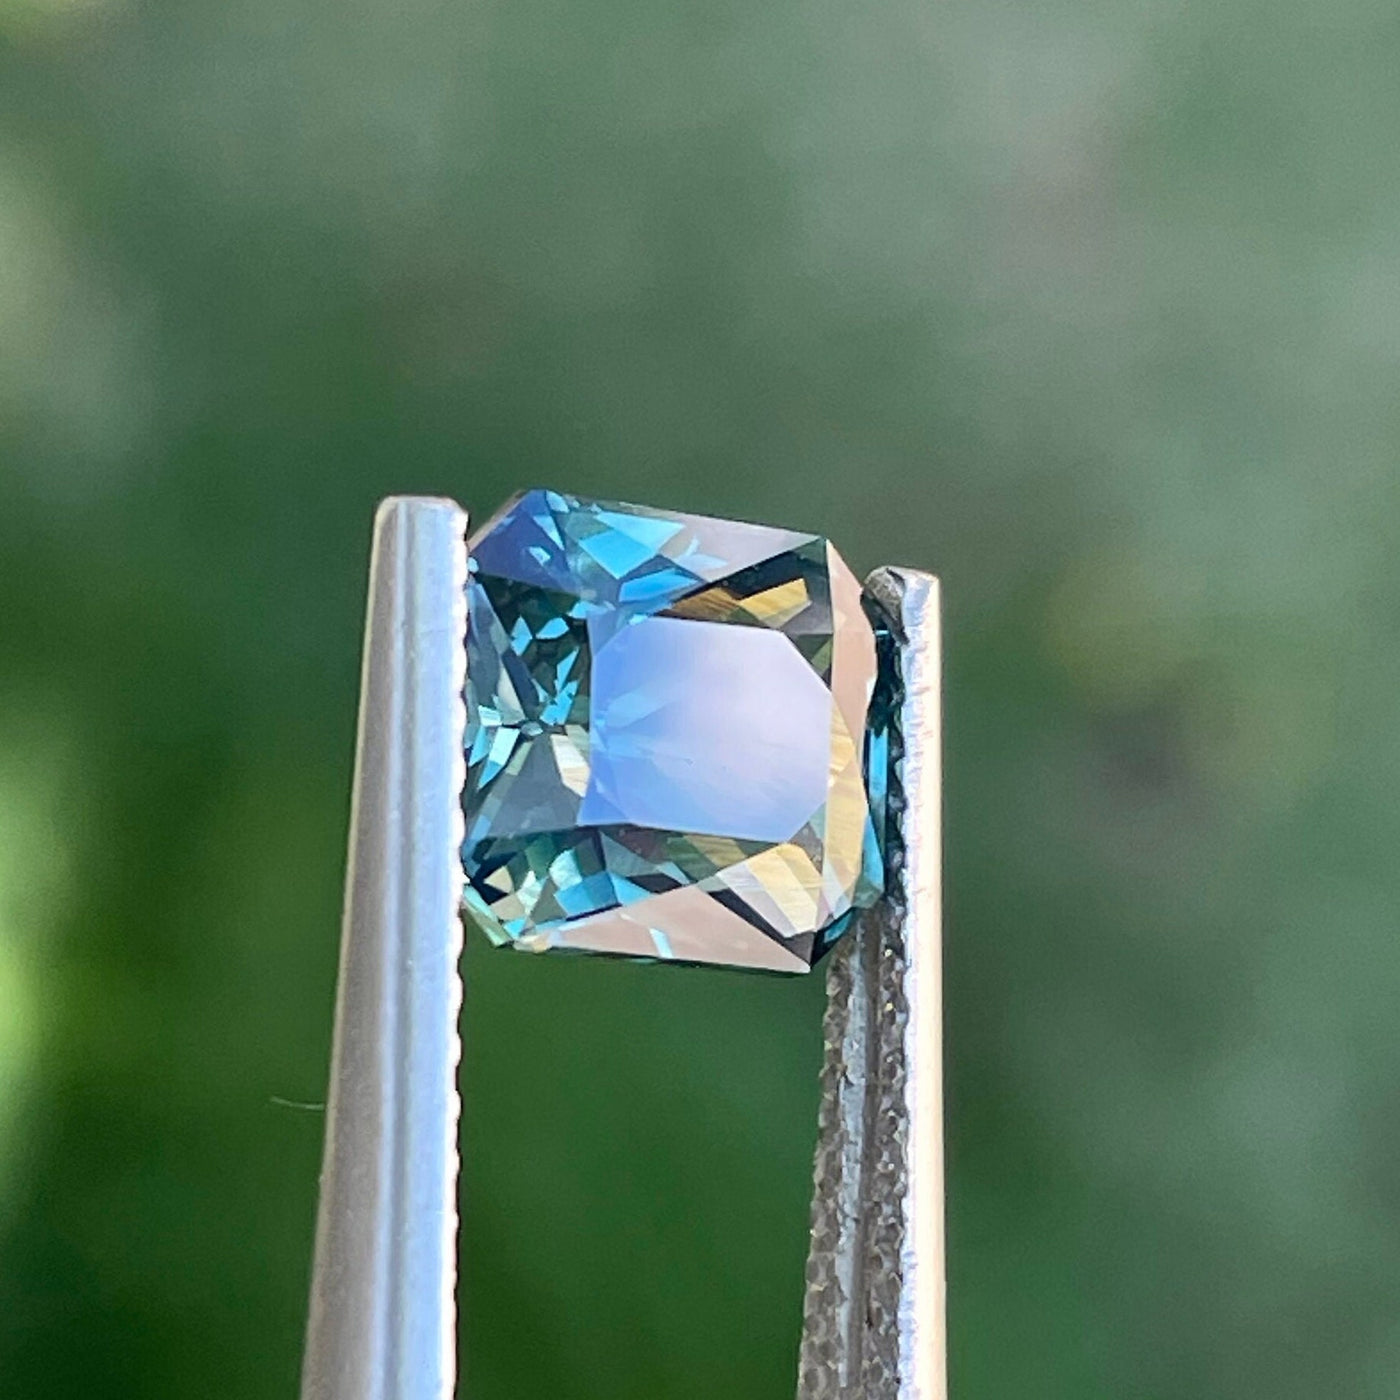 Teal Sapphire l 2.56 Cts l Cushion l 8x6.8x4.4mm l Fine Sapphires l Engagement Ring l Madagascar